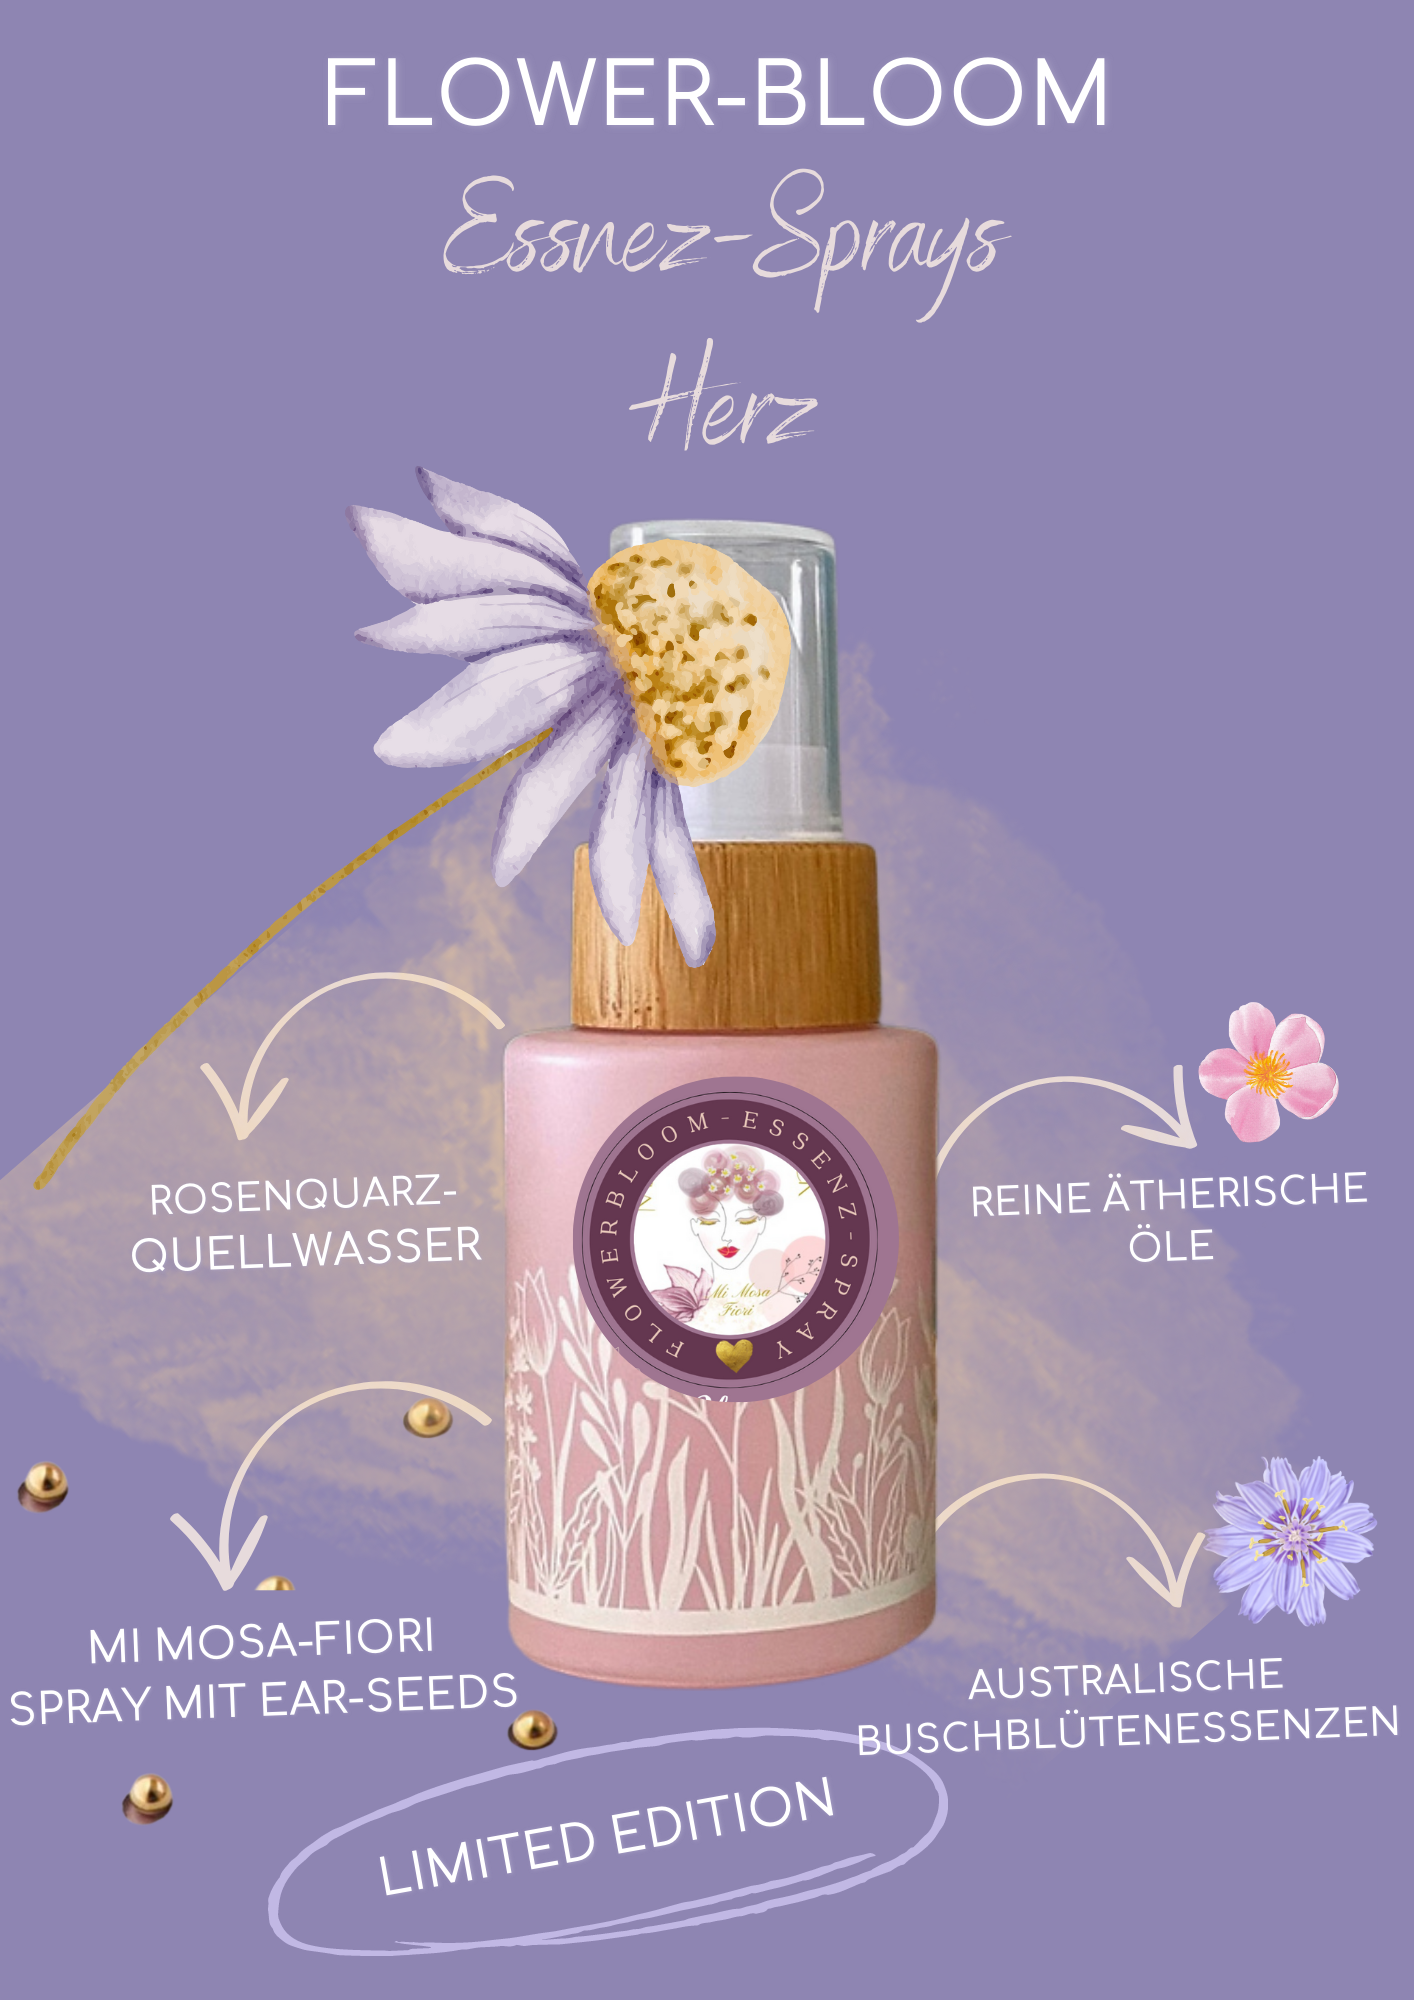 Flower-Bloom Essenz Spray Herz